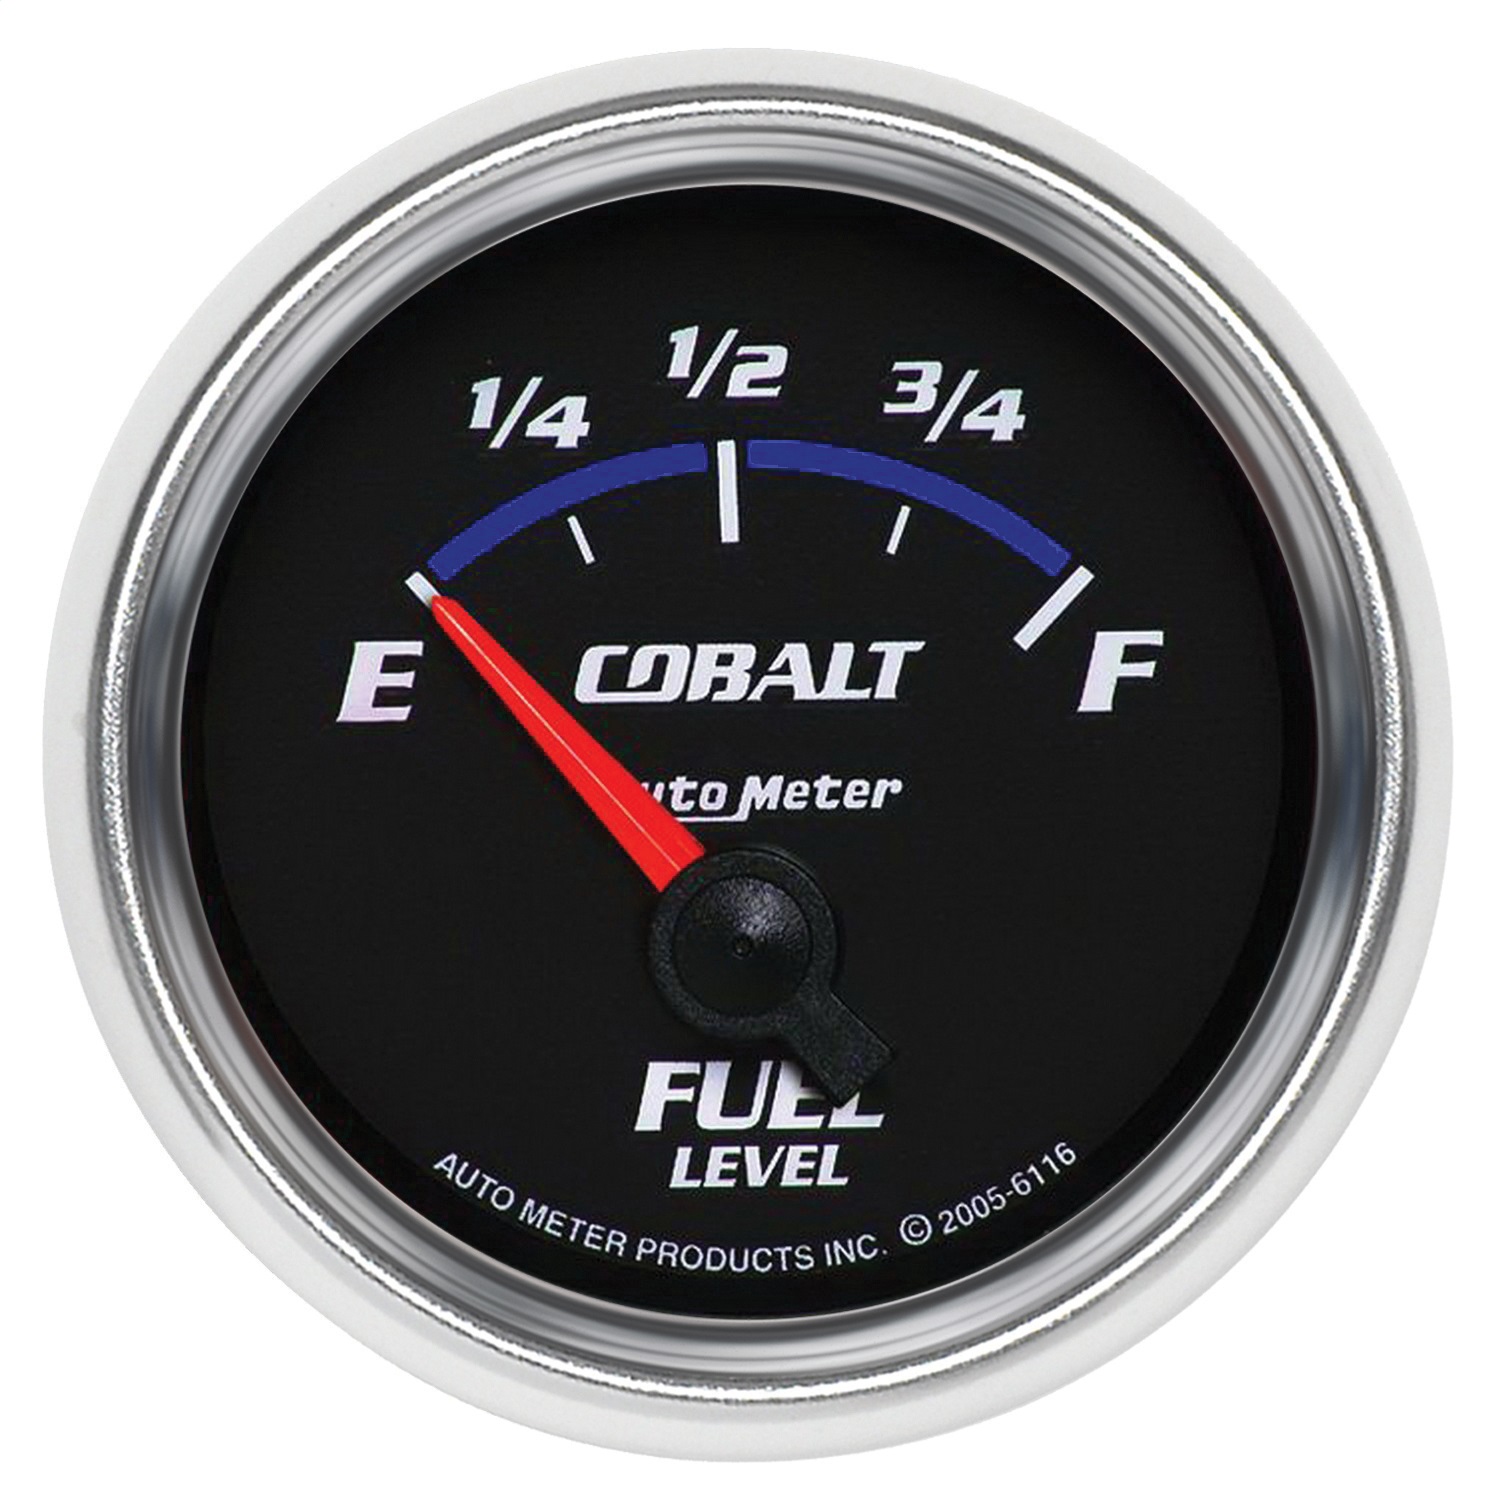 Auto Meter Auto Meter 6116 Cobalt; Electric Fuel Level Gauge